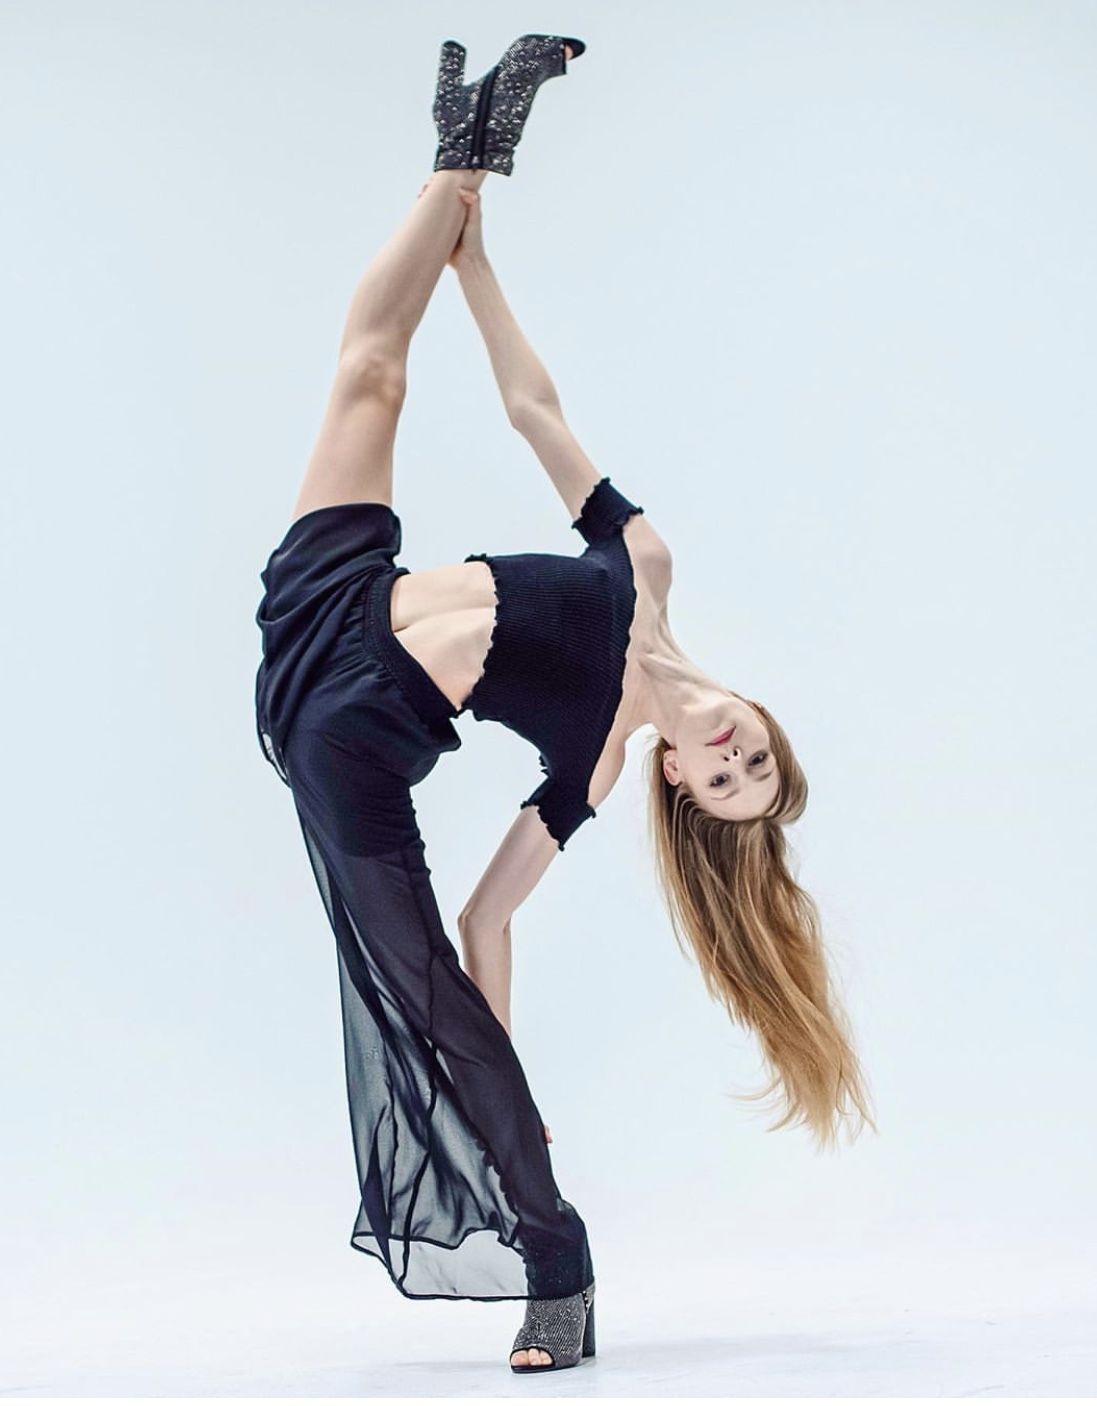 Ballerina Farrah Hirsch achieved flexibility goals using Stacey's Flexibility Training program 